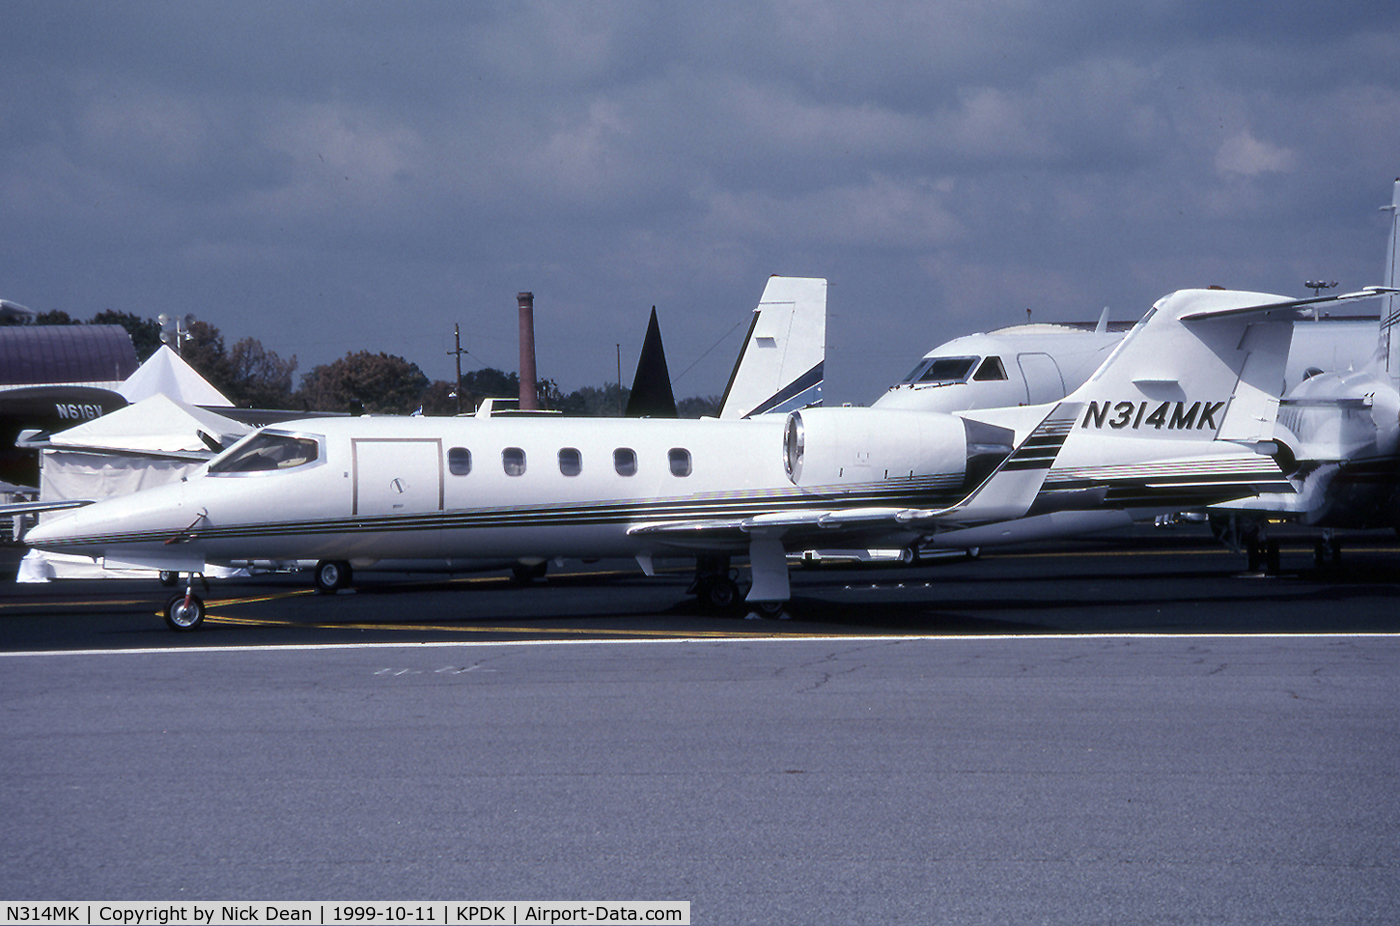 N314MK, 1991 Learjet 31A C/N 31A-040, KPDK